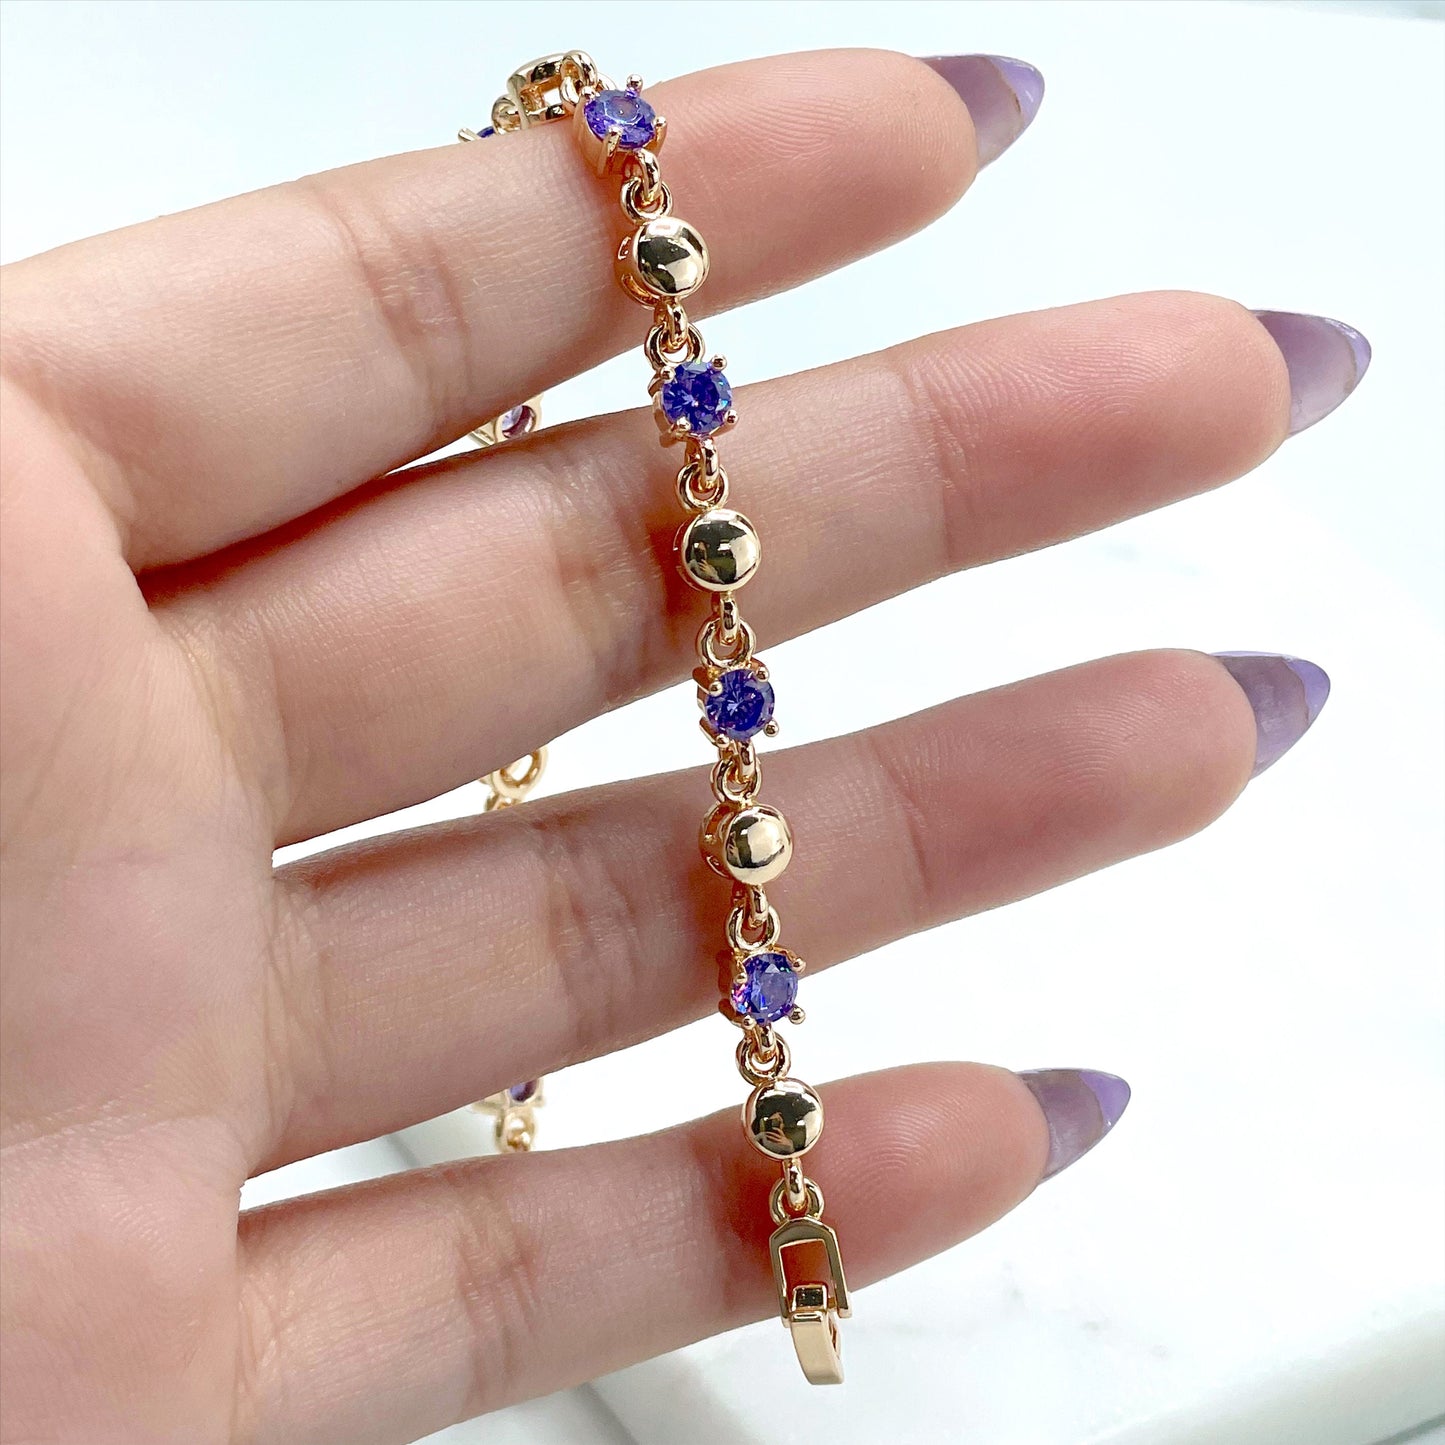 18k Gold Filled Purple Zirconia, Fancy Bracelet Wholesale Jewelry Supplies